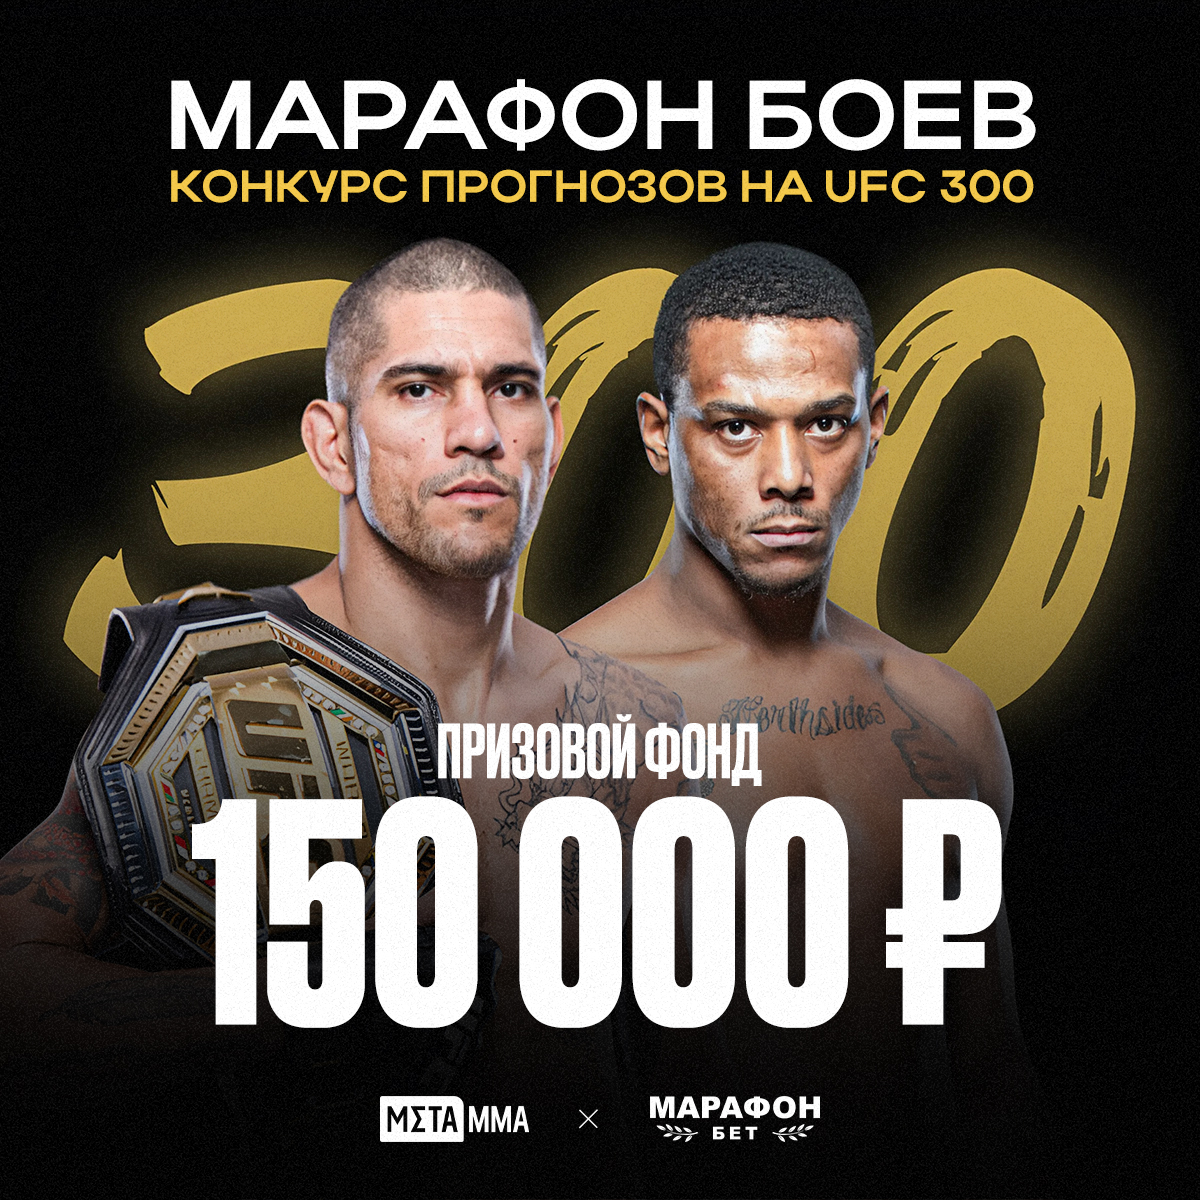 Бесплатный конкурс прогноз на UFC 300